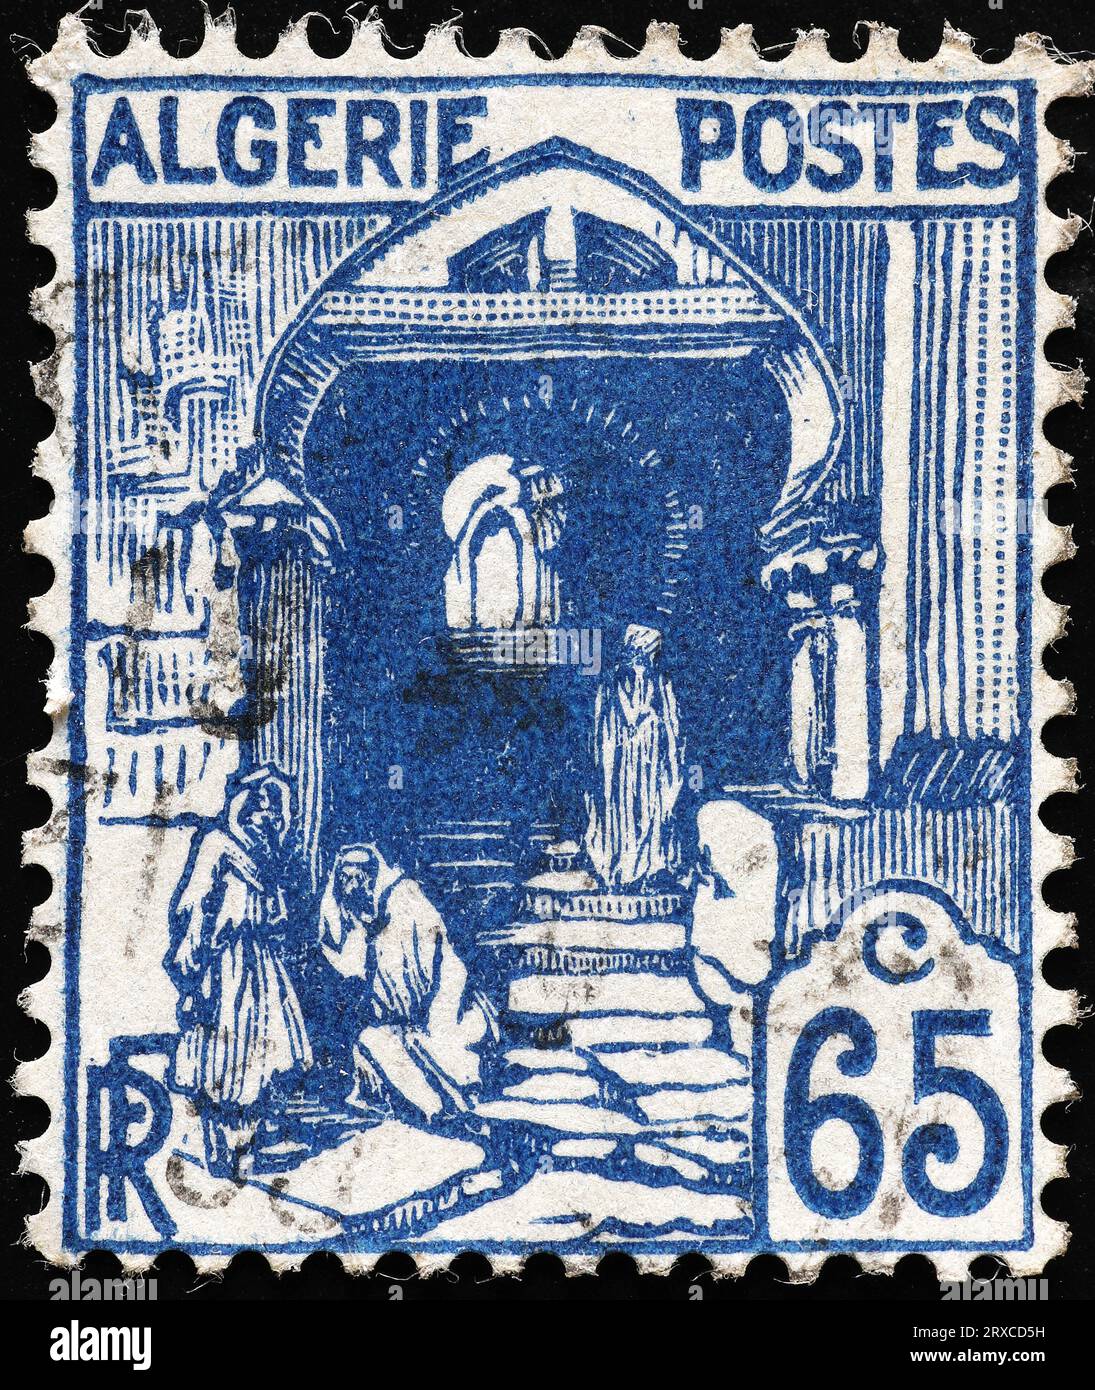 Ancien timbre-poste algérien Banque D'Images